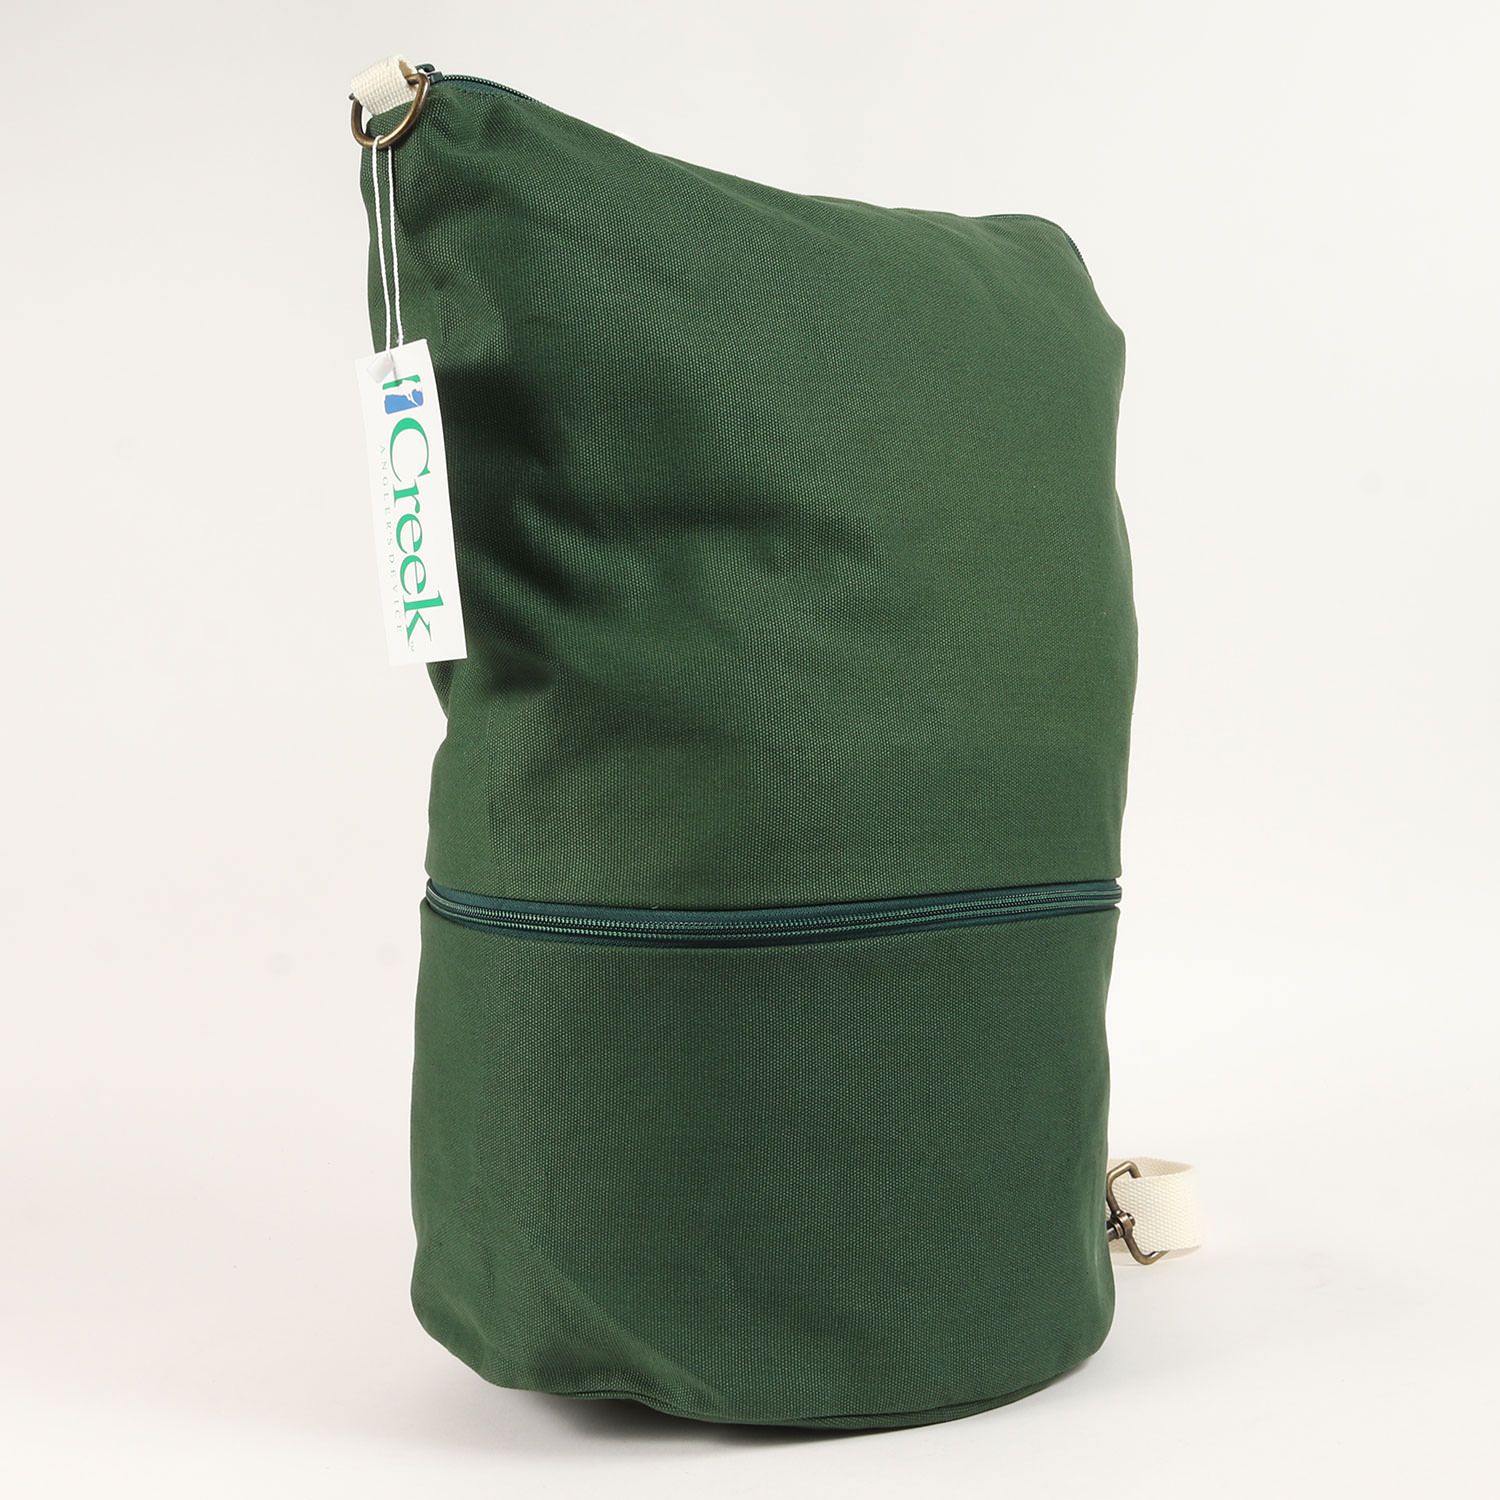 【新品未使用】creek angler's device canvas bag